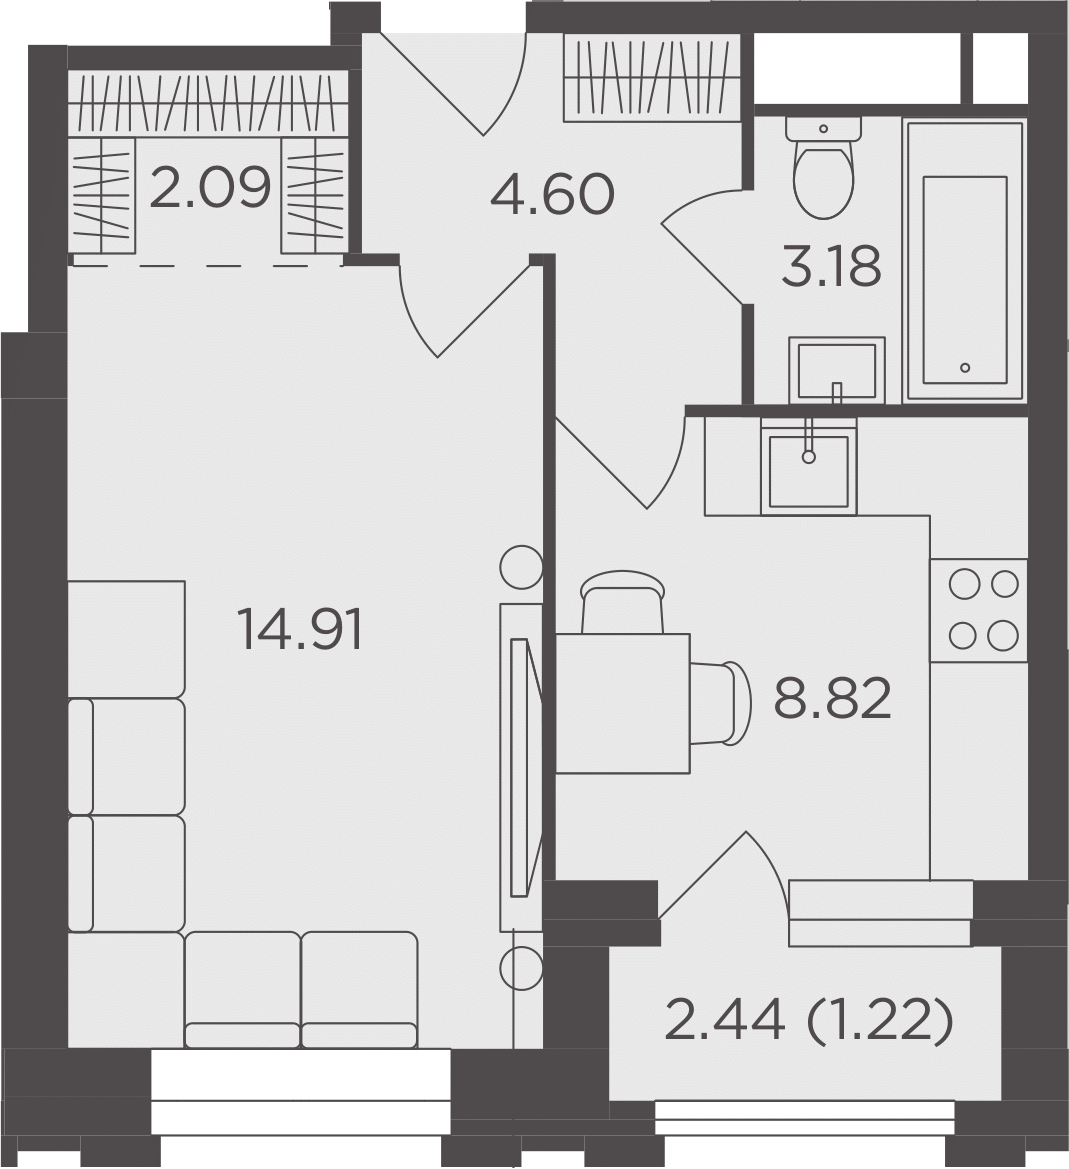 1-комнатная, 34.82 м²– 2